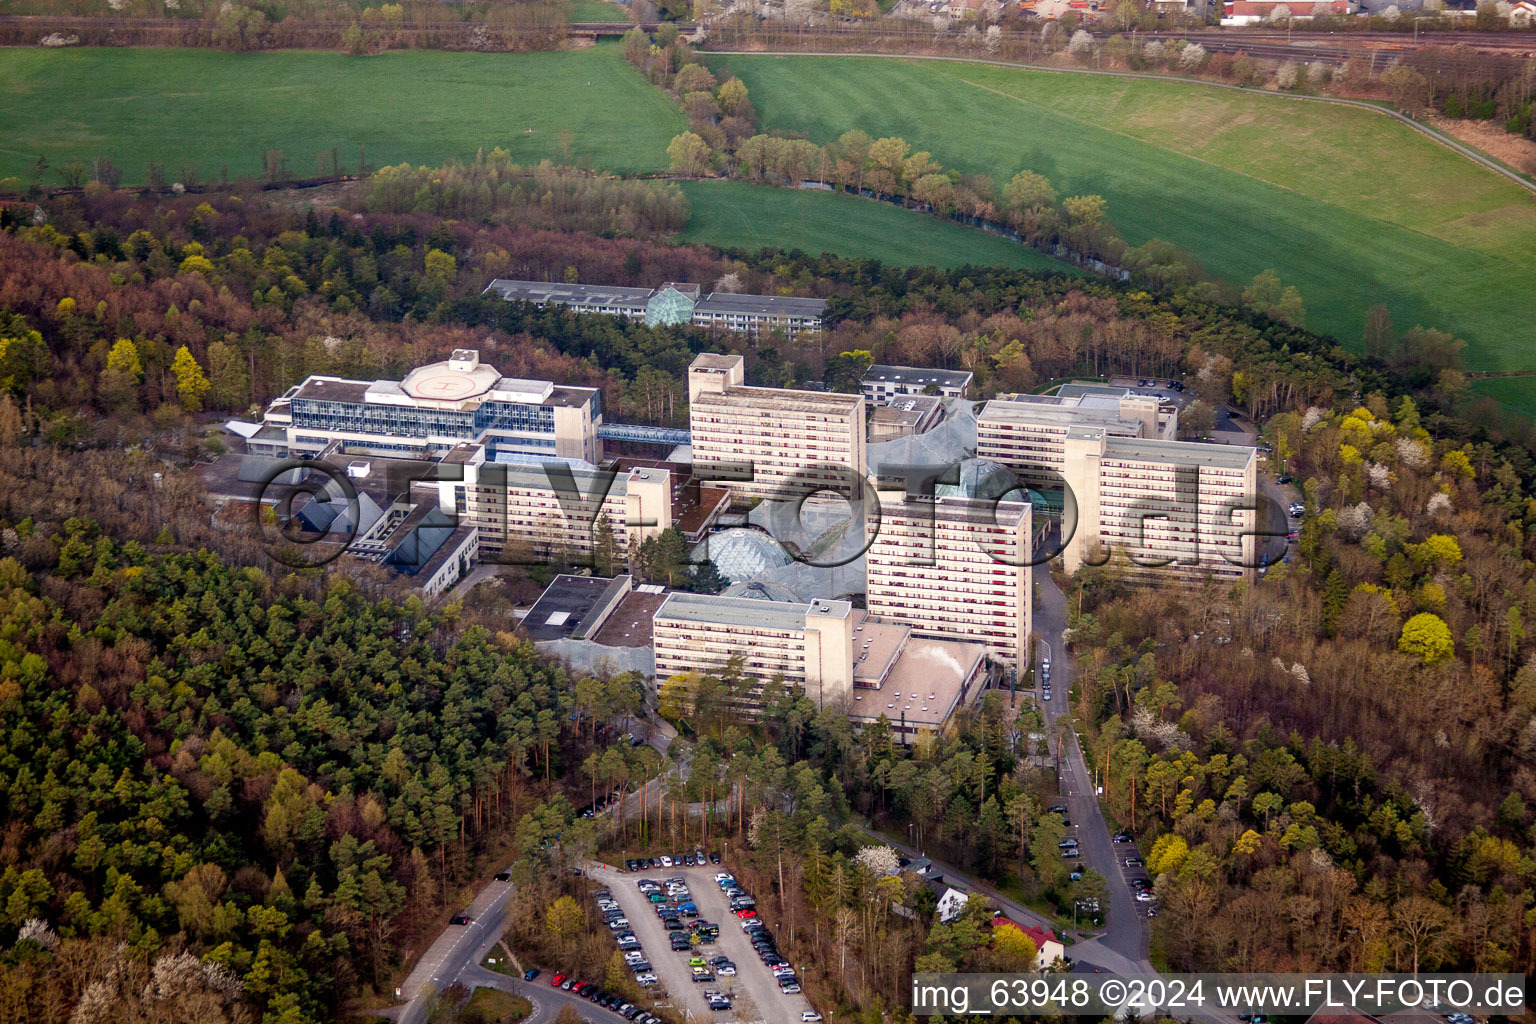 Luftaufnahme von Klinikgelände des Krankenhauses Neurologische Klinik Bad Neustadt an der Saale in Bad Neustadt an der Saale im Bundesland Bayern, Deutschland